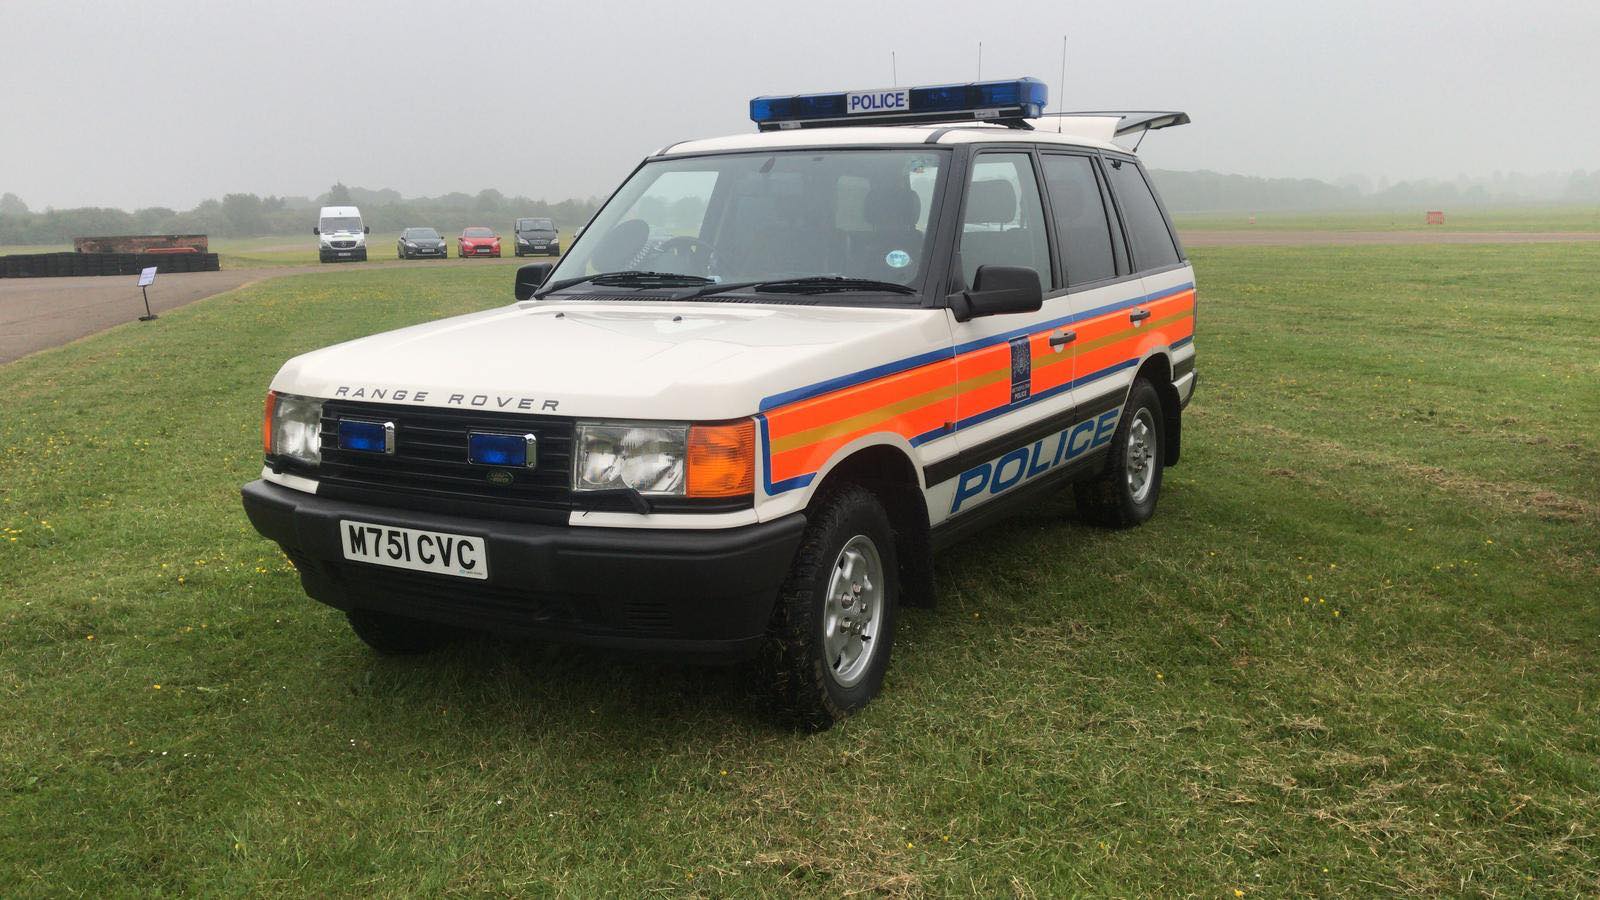 Police Range Rover